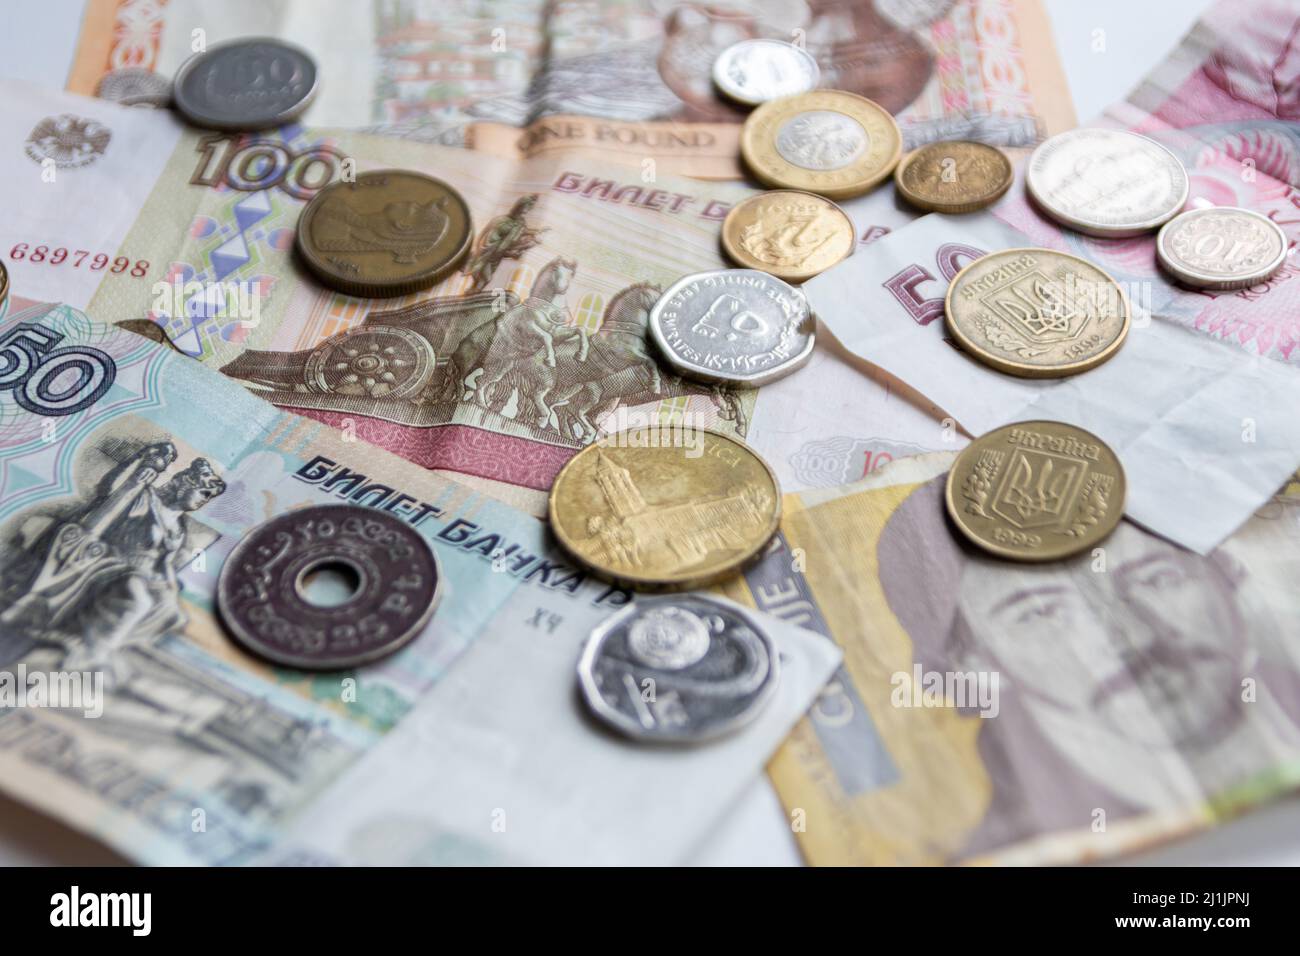 La variedad de diferentes billetes y monedas de varios países como el euro, la libra, el dinero de los emiratos, el billete de banco de chipre y otros representan a nivel internacional Foto de stock